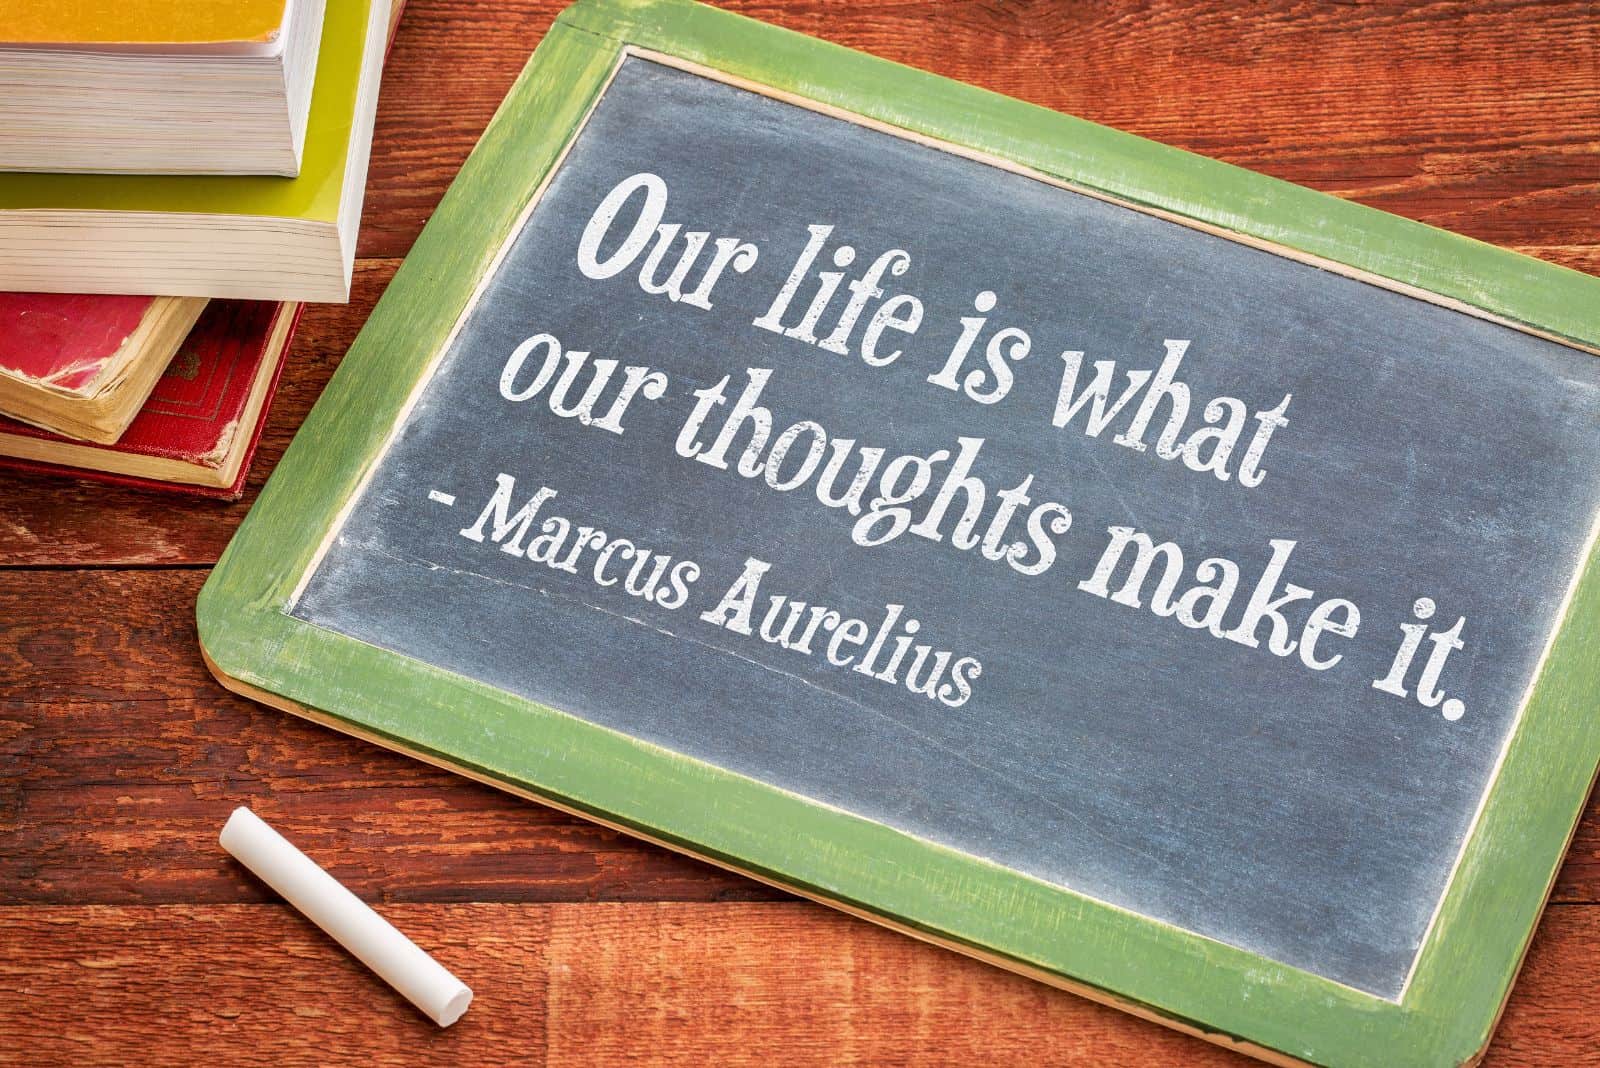 quote by Marcus Aurelius